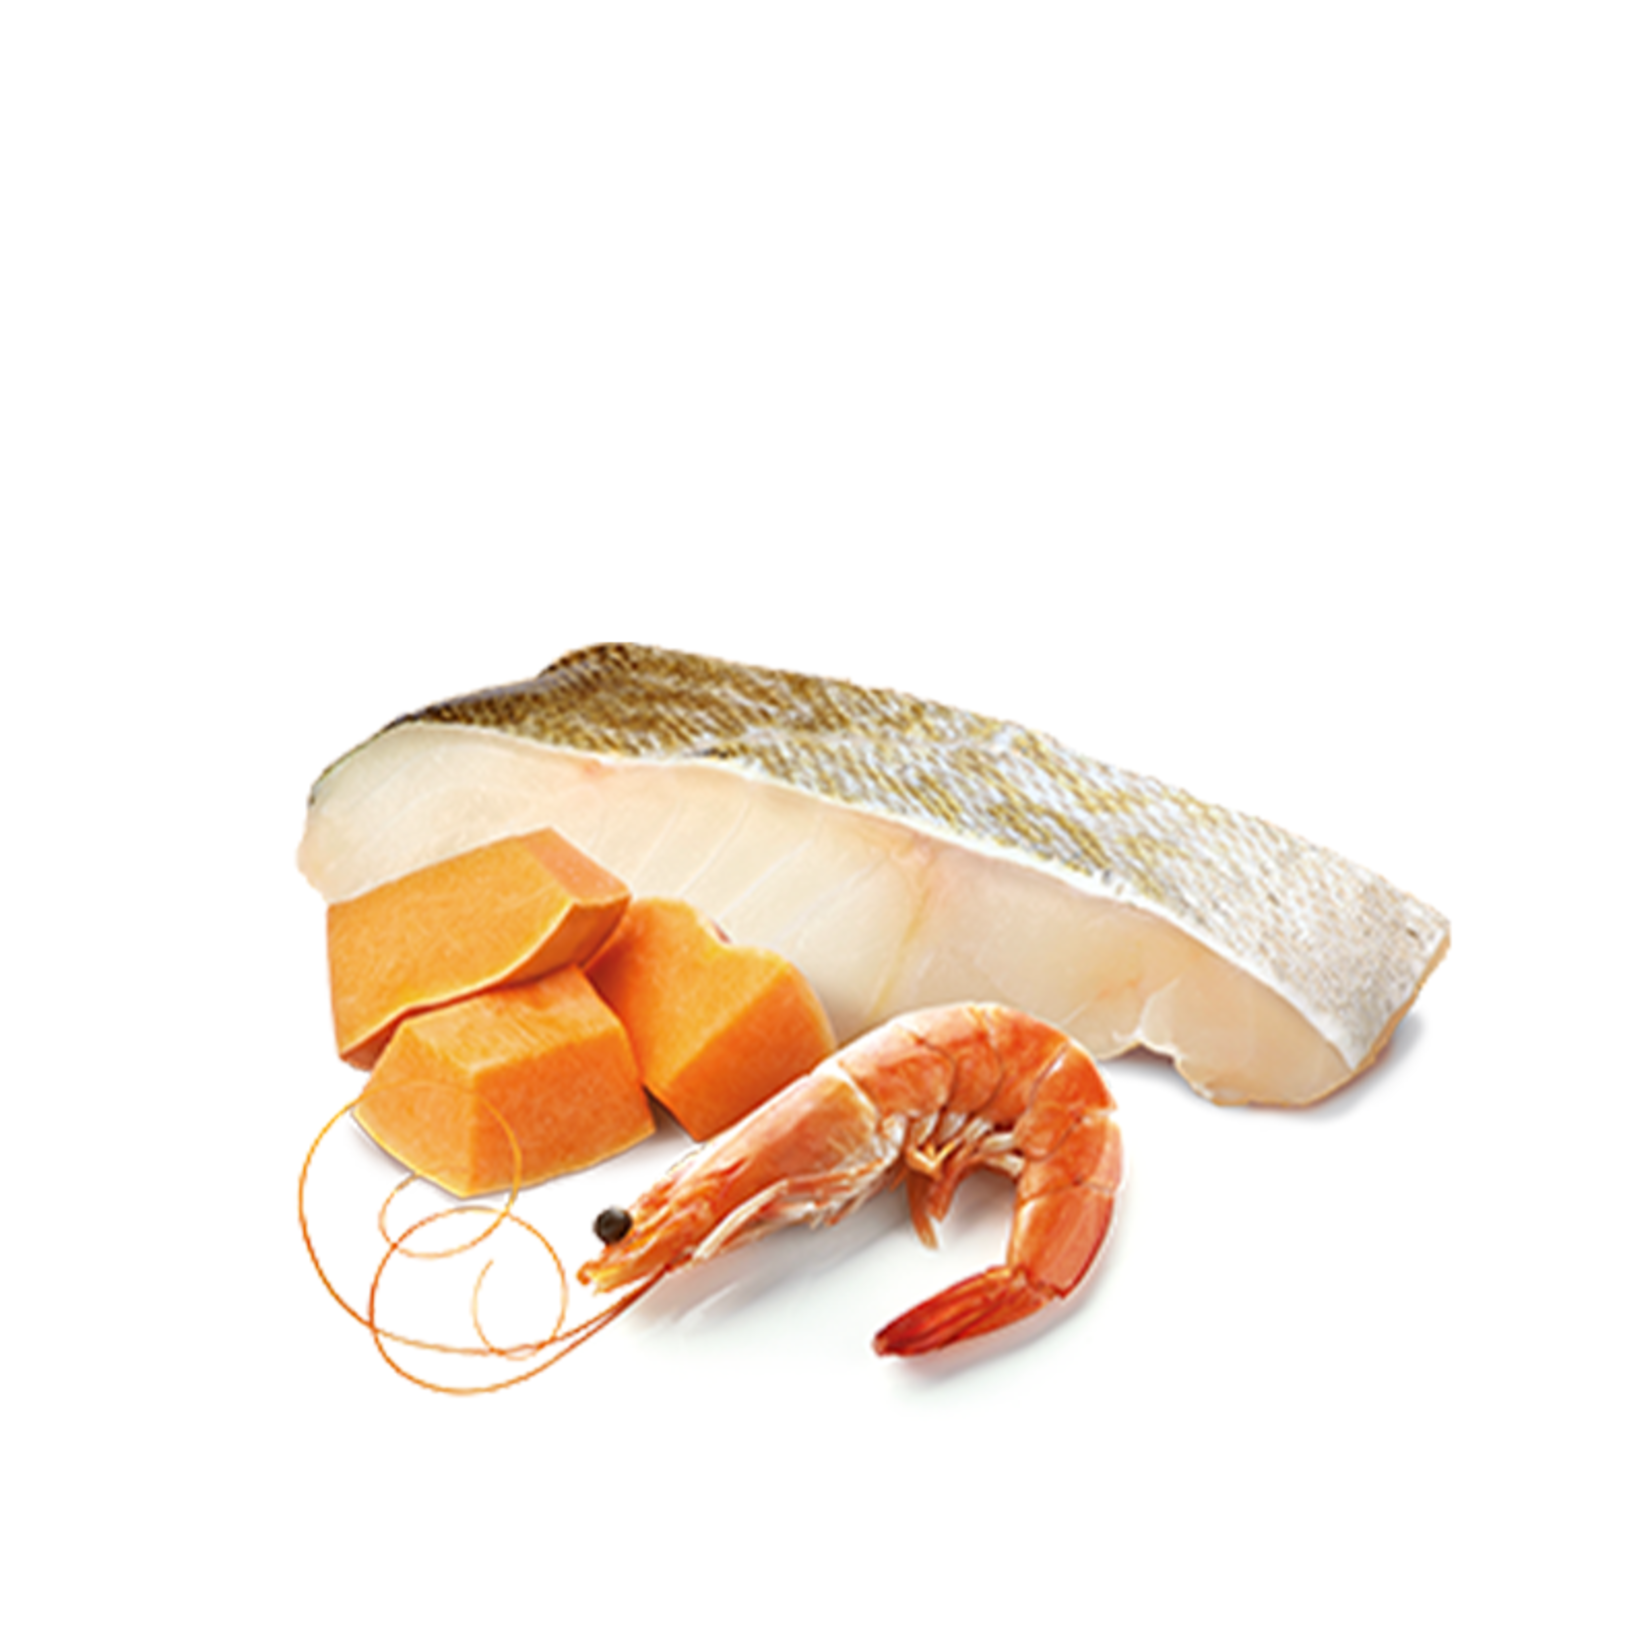 N & D Farmina N&D Farmina Cod, Shrimps & Pumpkin Ocean Cat 2.5oz